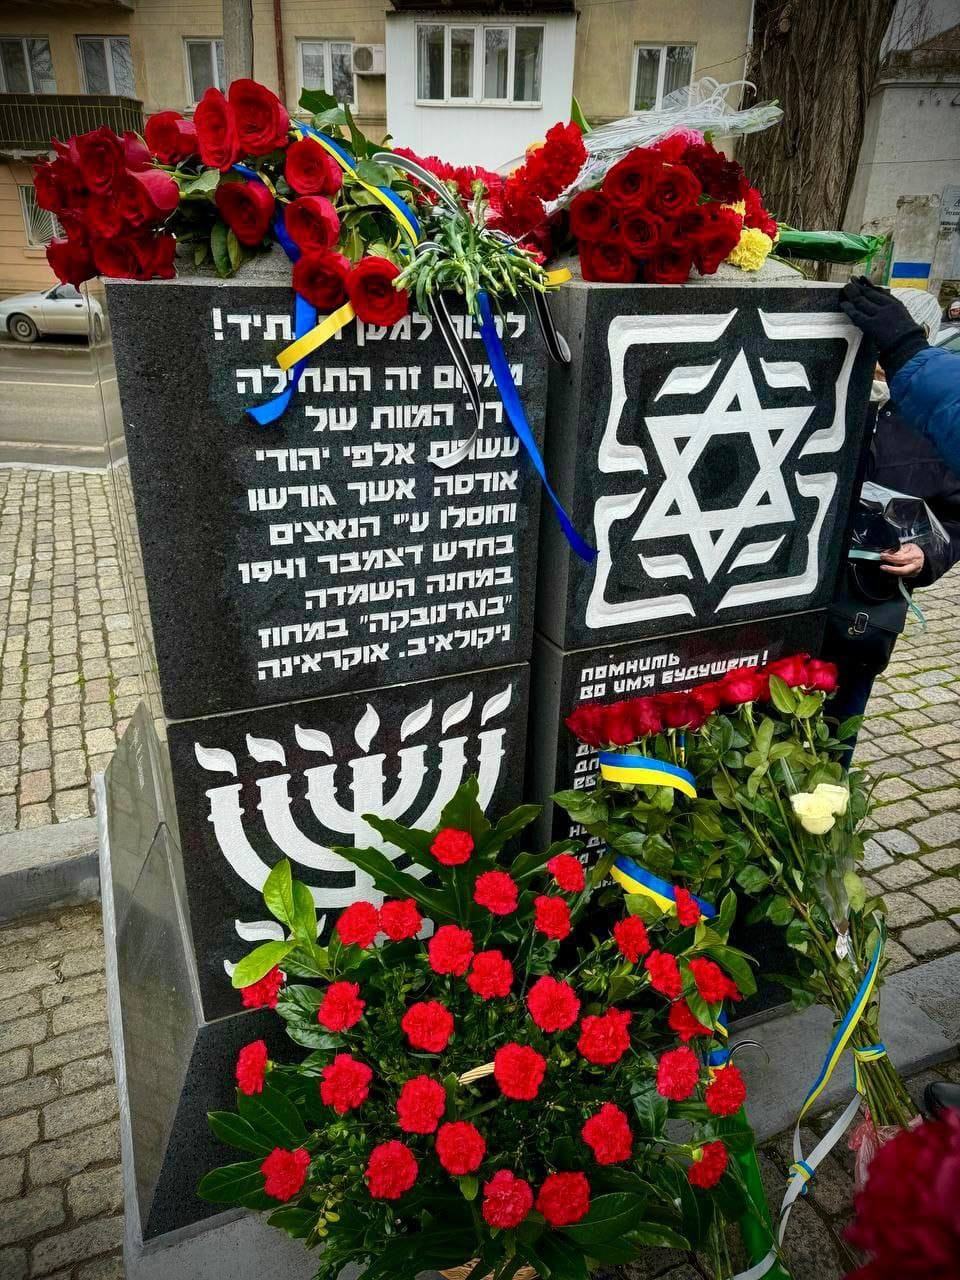 В Одесі вшанували пам'ять жертв Голокосту